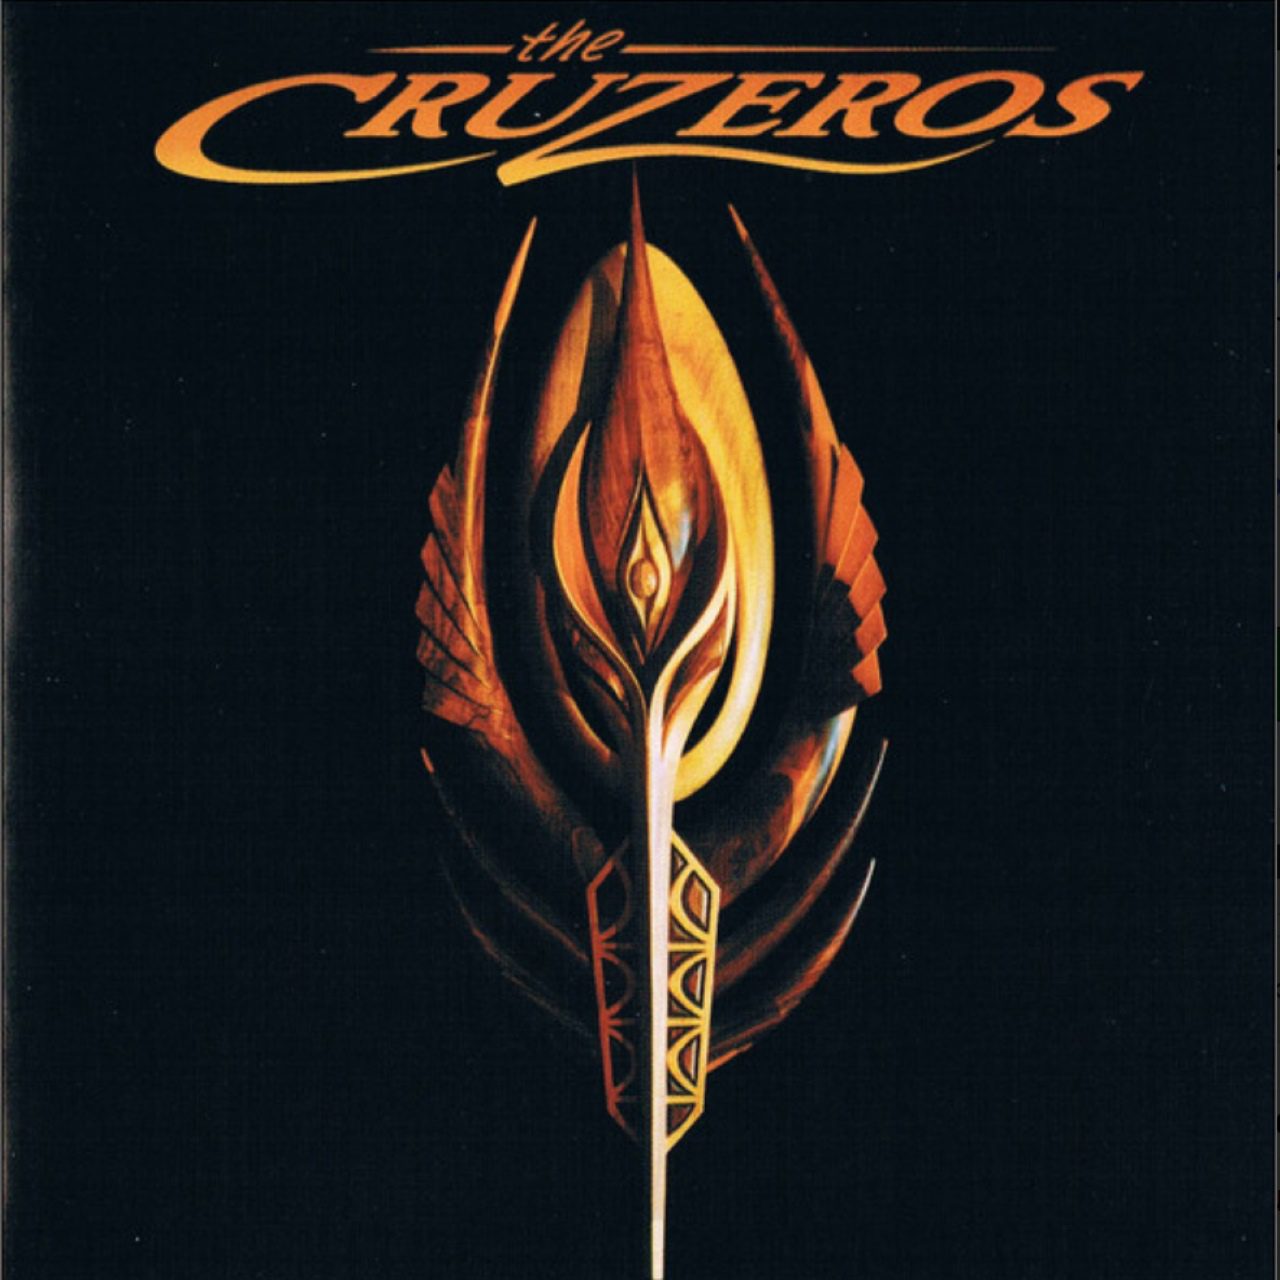 Cruzeros – The Cruzeros cover album